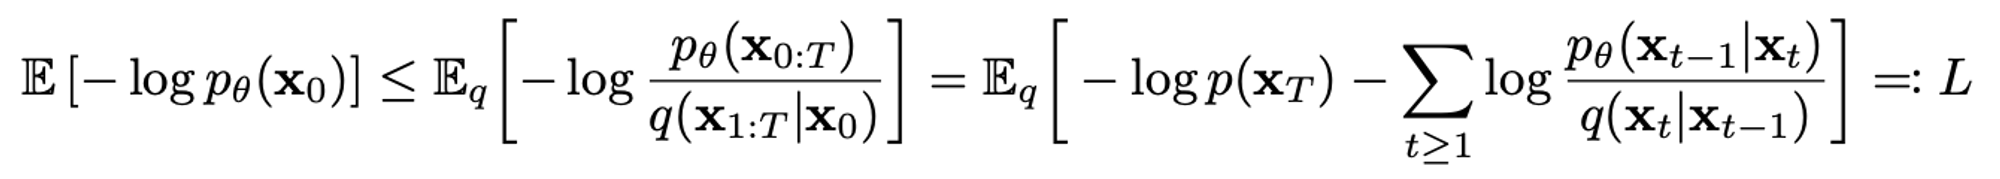 Diffusion Model의 Loss Function